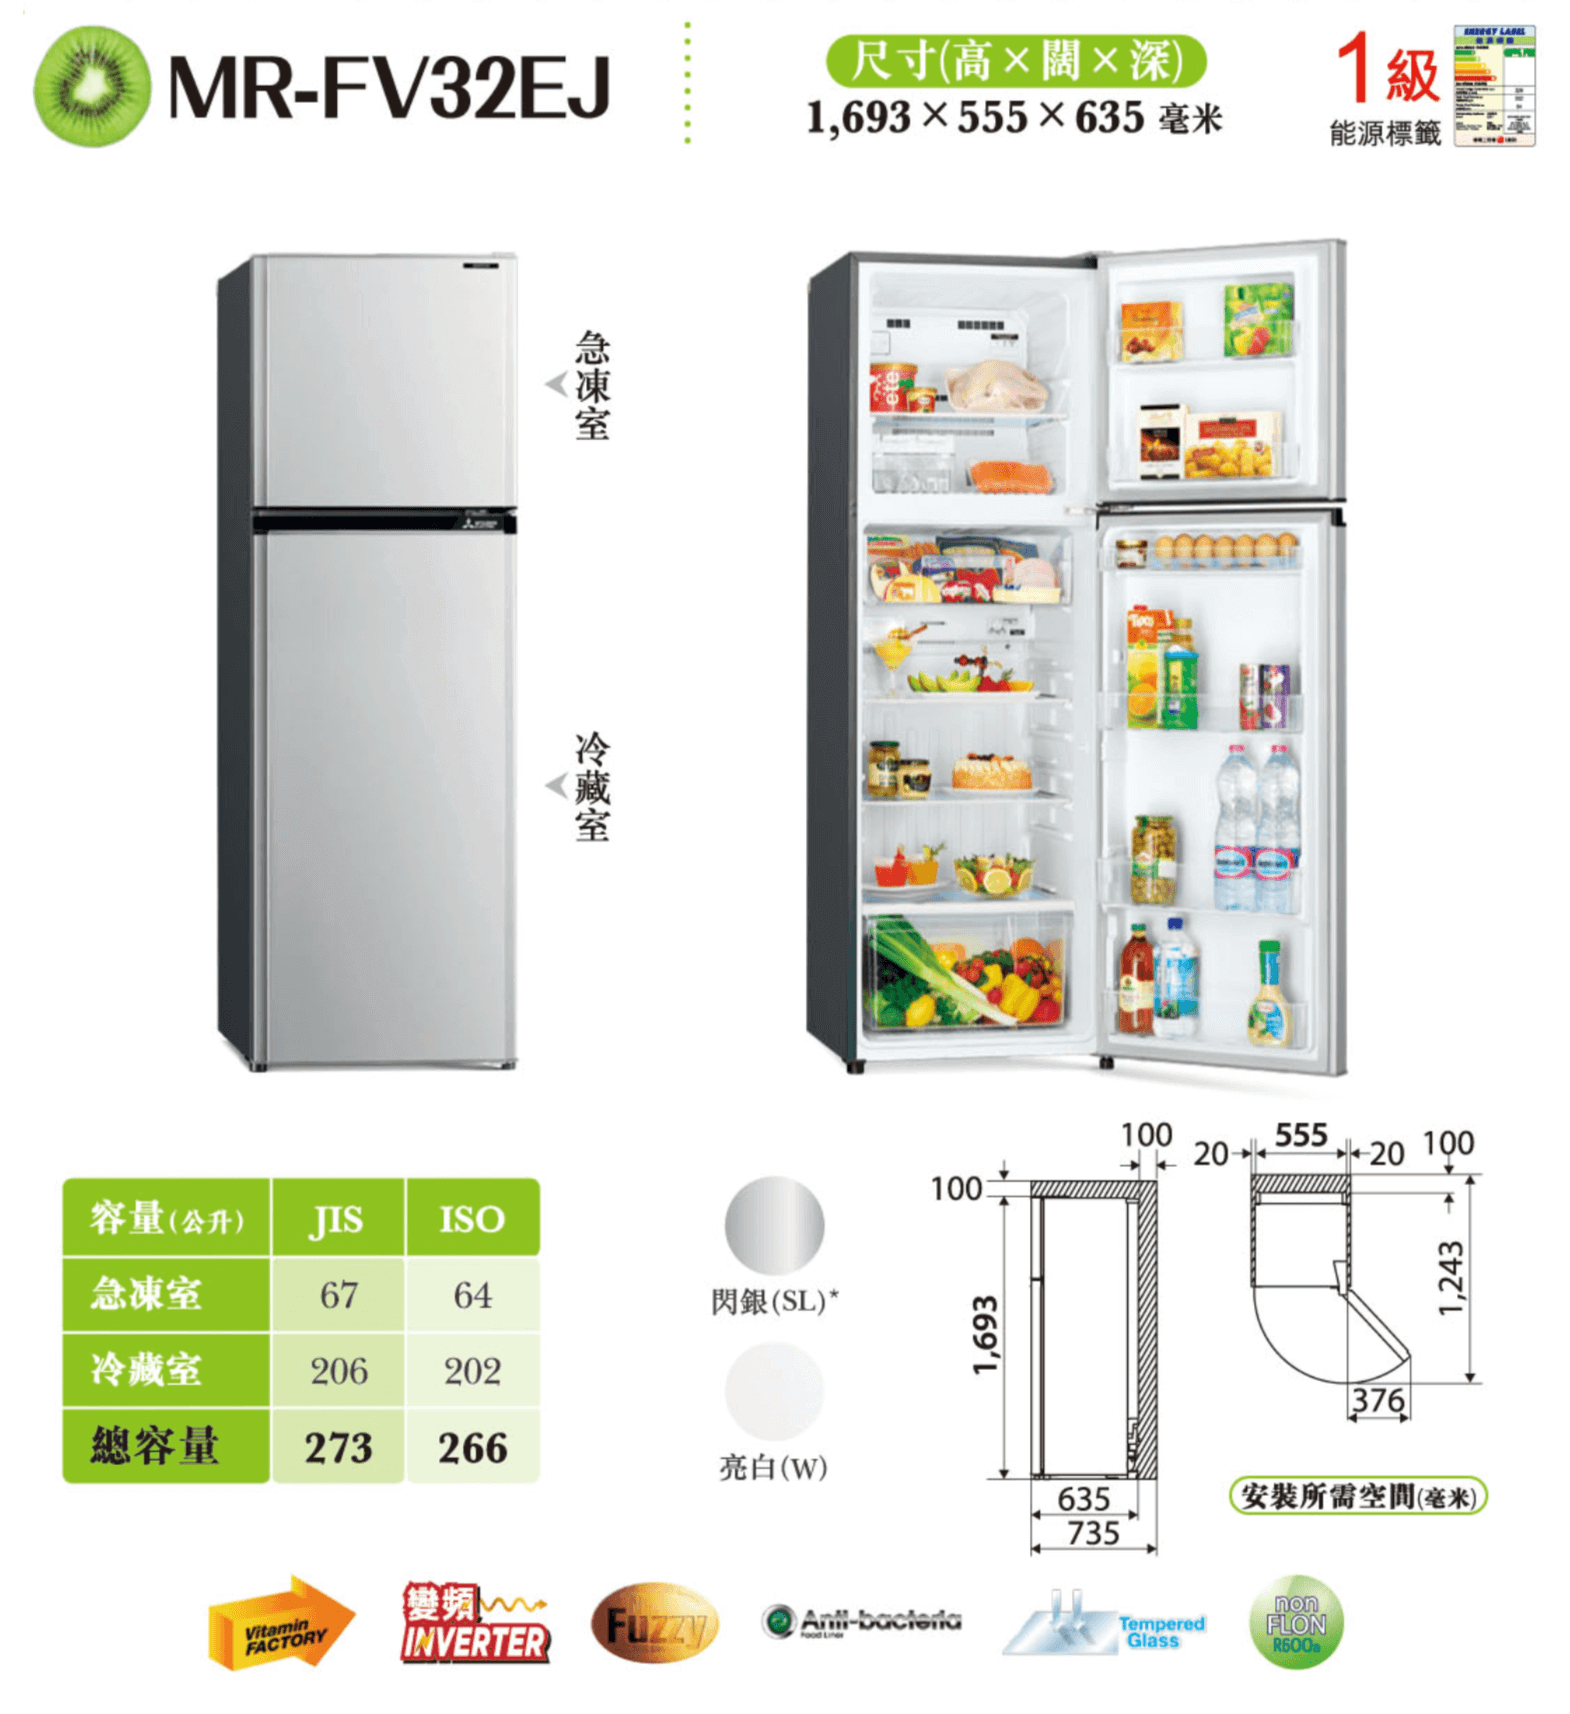 【已停產】Mitsubishi 三菱 MR-FV32EJ-W-H 266公升 上層冷凍式雙門雪櫃 (亮白色)